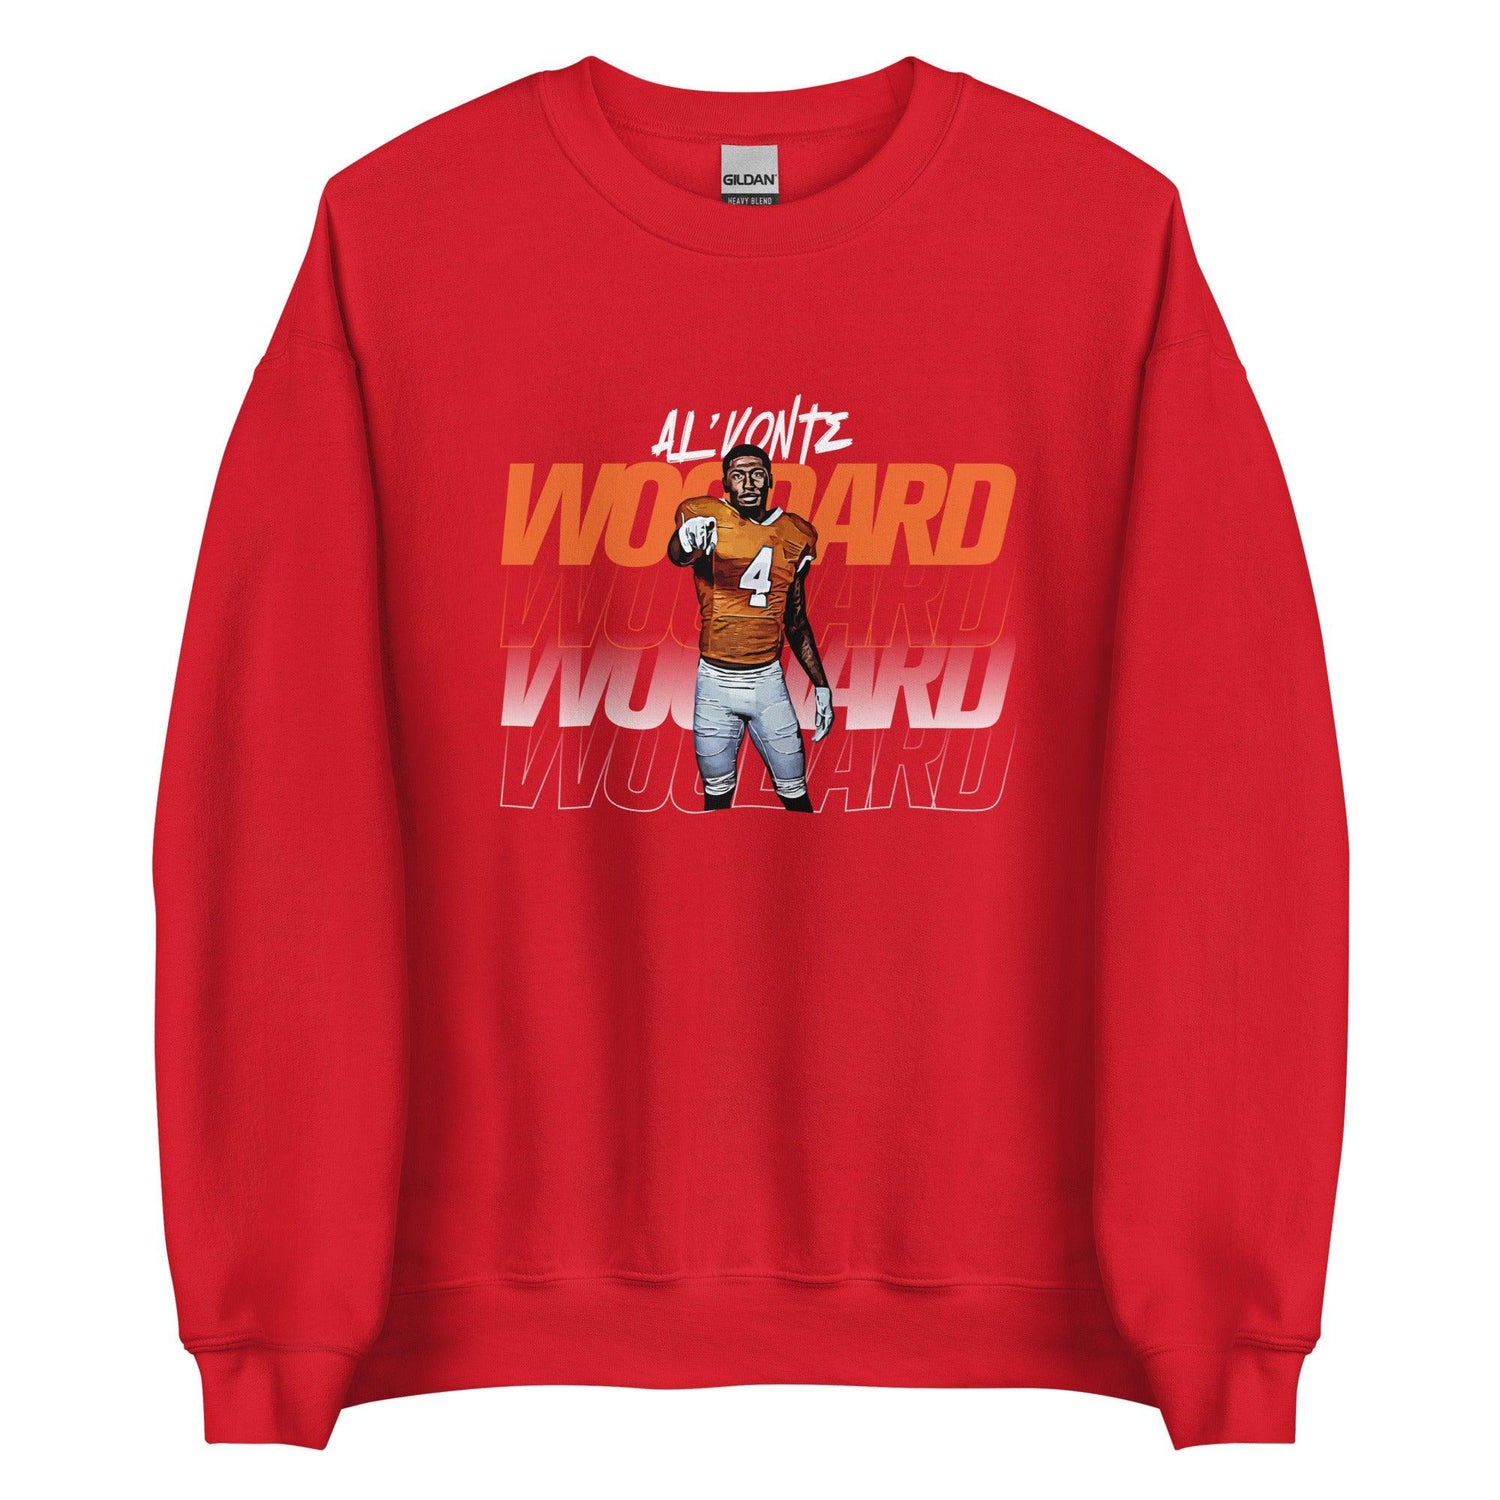 Al’vonte Woodard "Gameday" Sweatshirt - Fan Arch